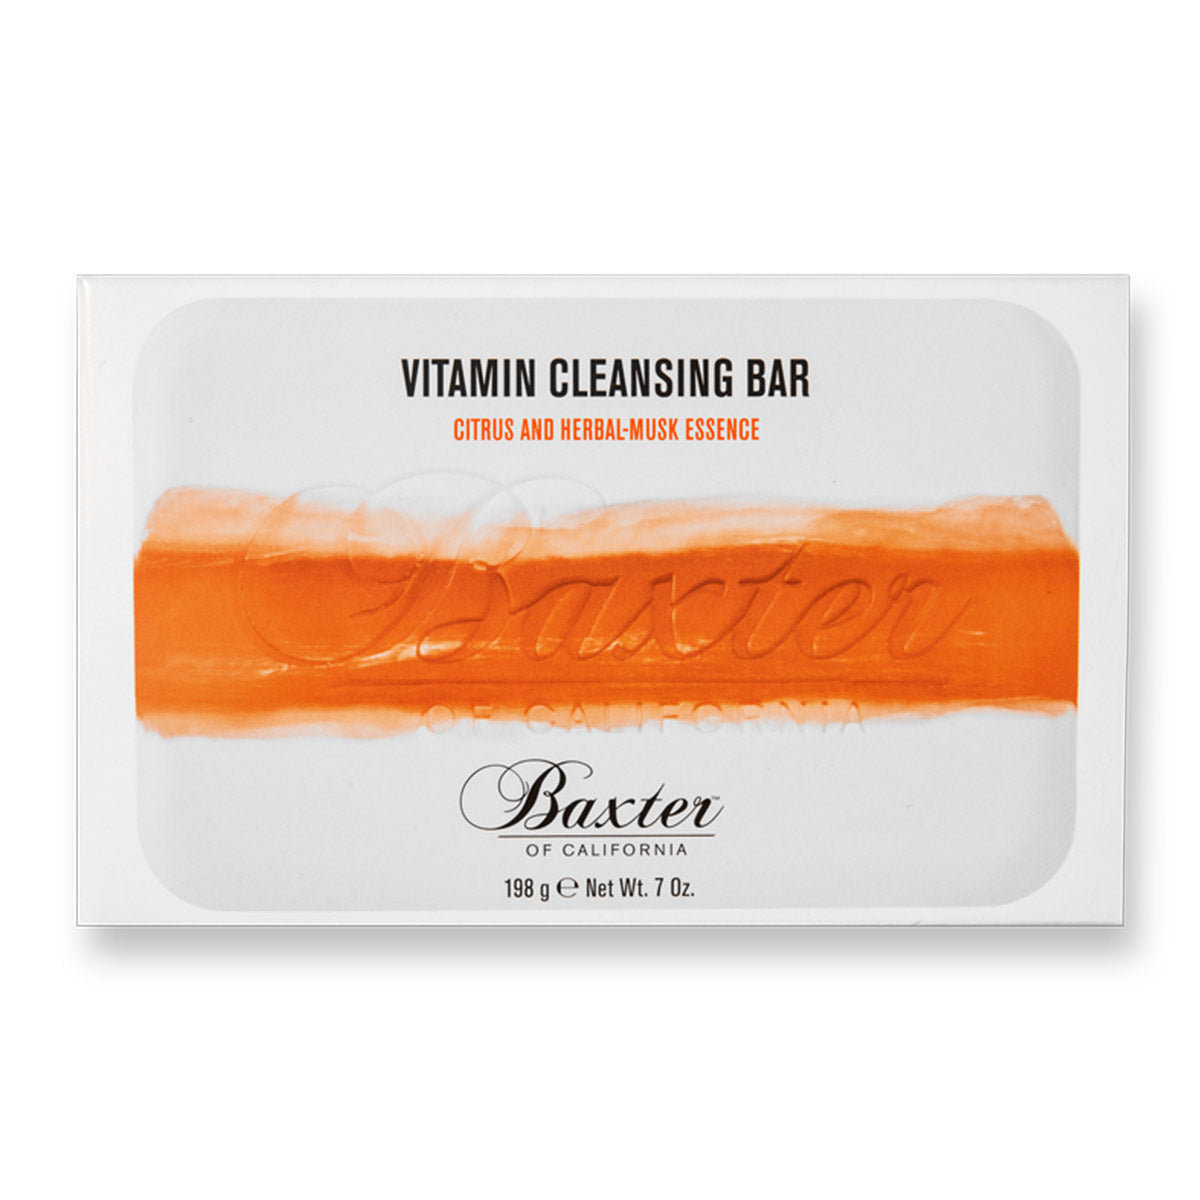 Alternate image of Vitamin Cleansing Bar - Citrus + Herbal Musk